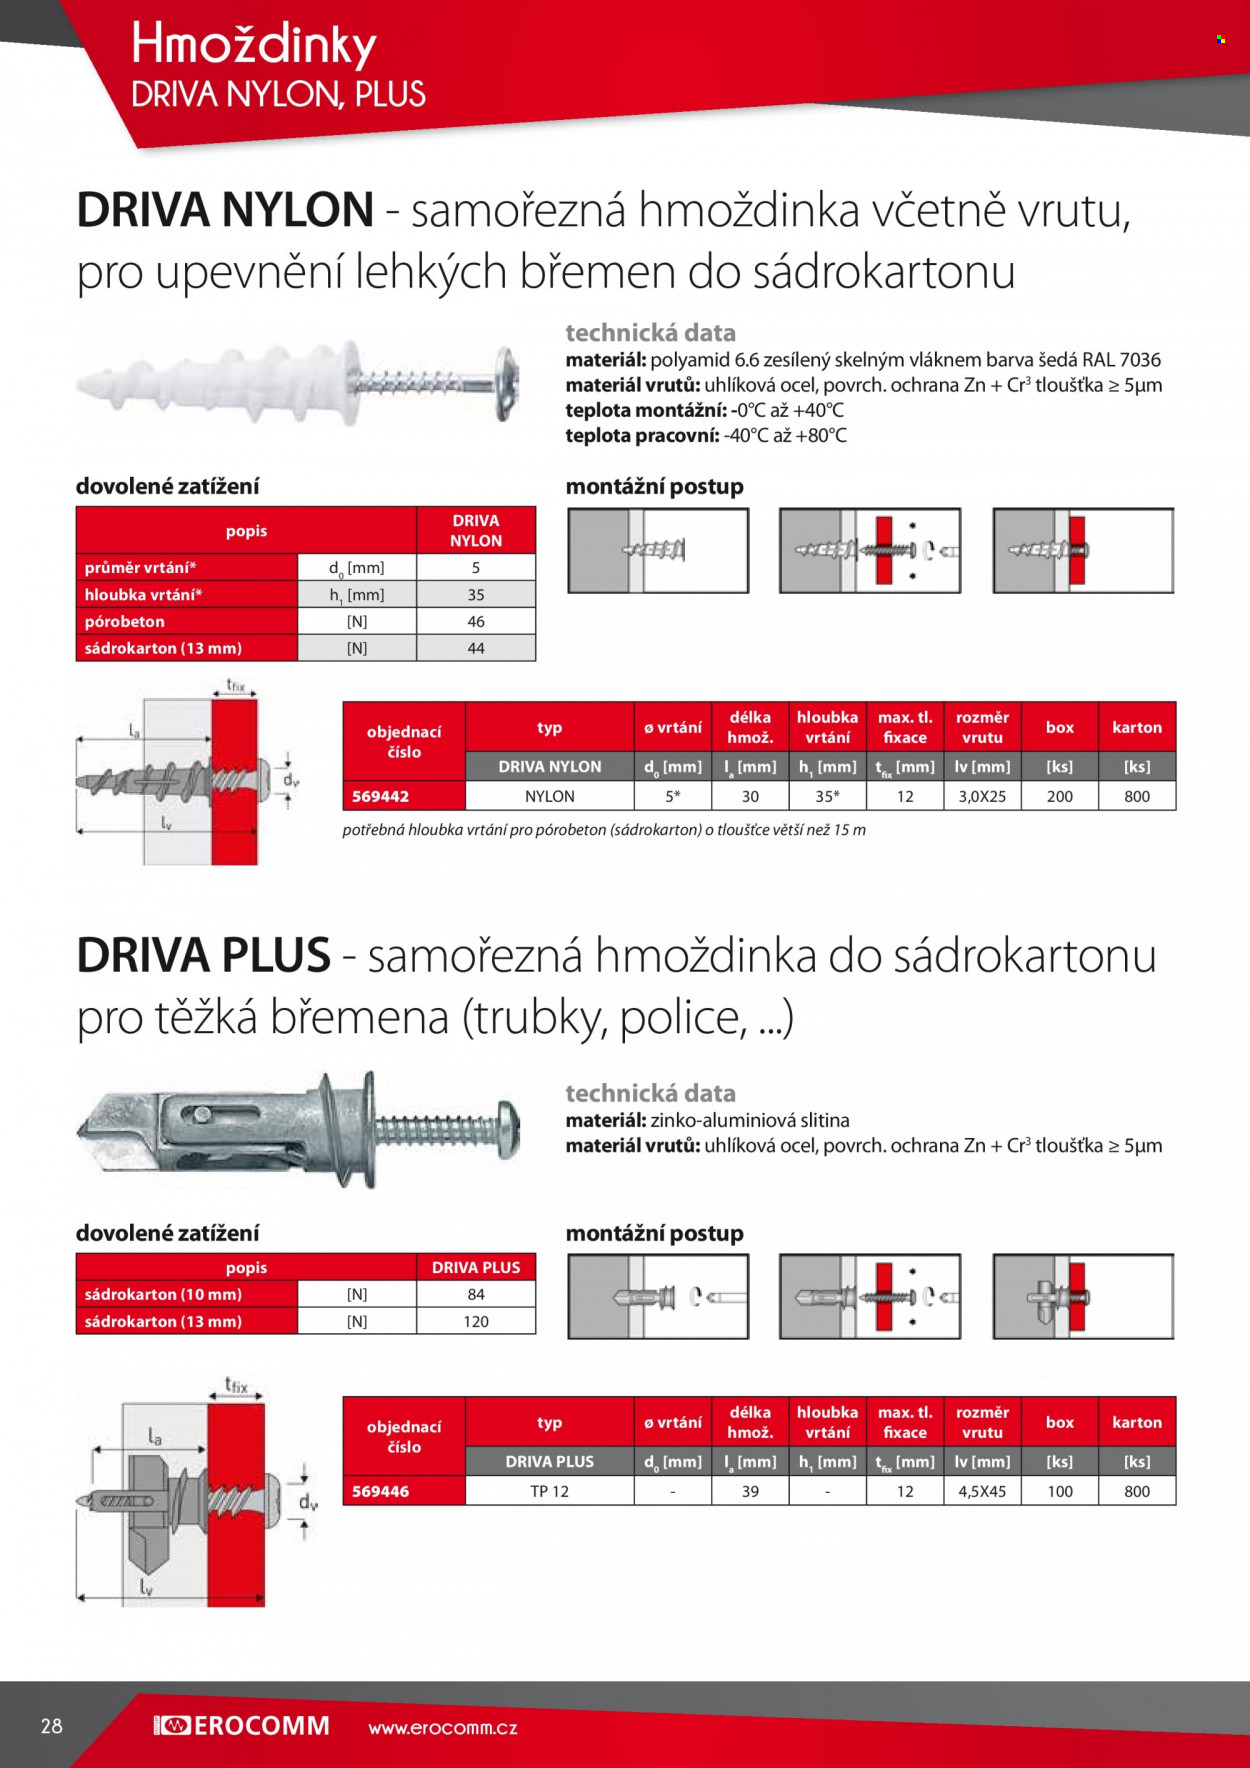 thumbnail - Leták Erocomm - Produkty v akci - hmoždinky, police. Strana 28.